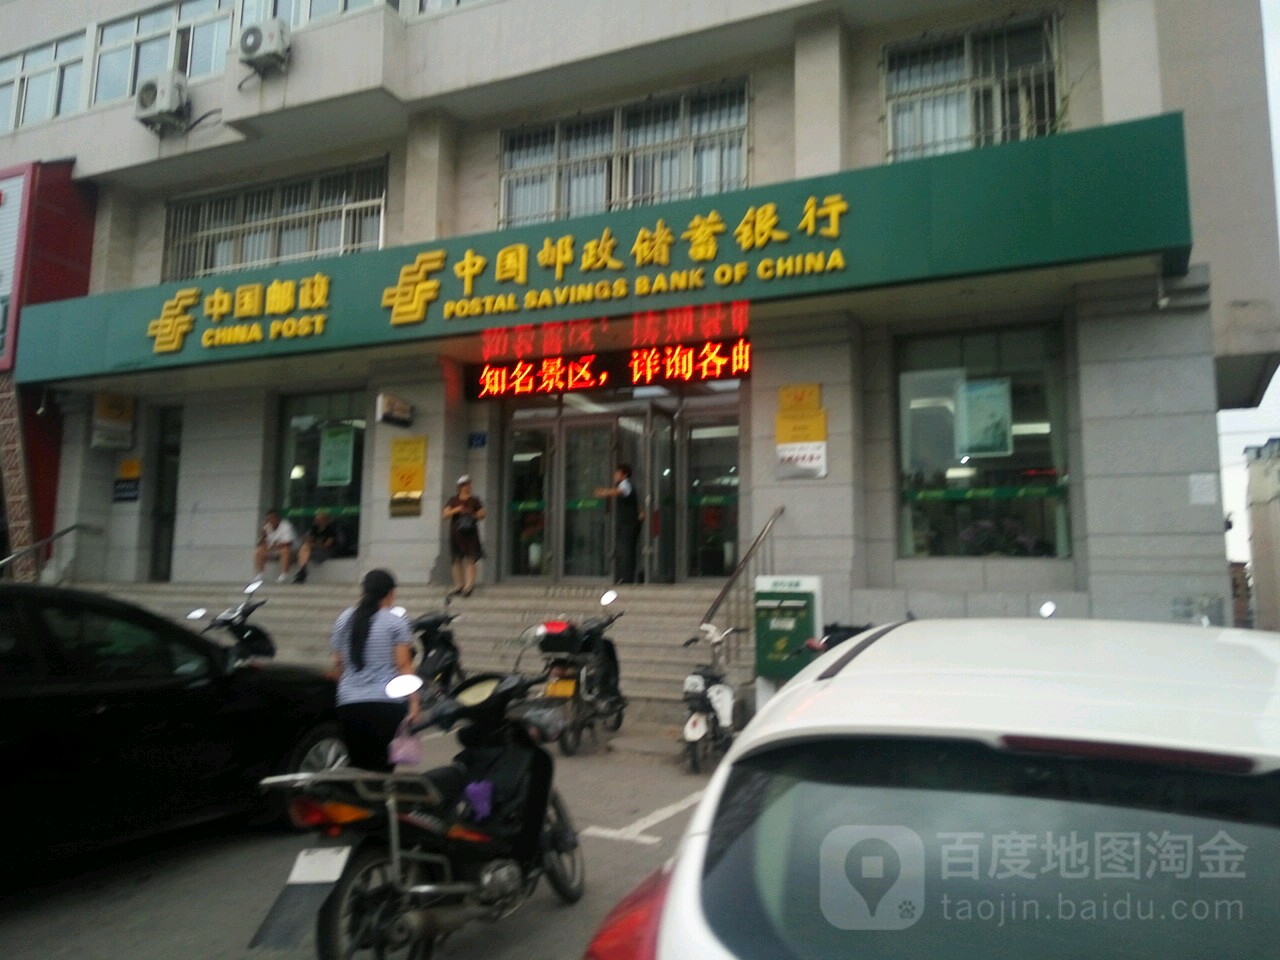 中国邮政储蓄银行(中山邮政支局)